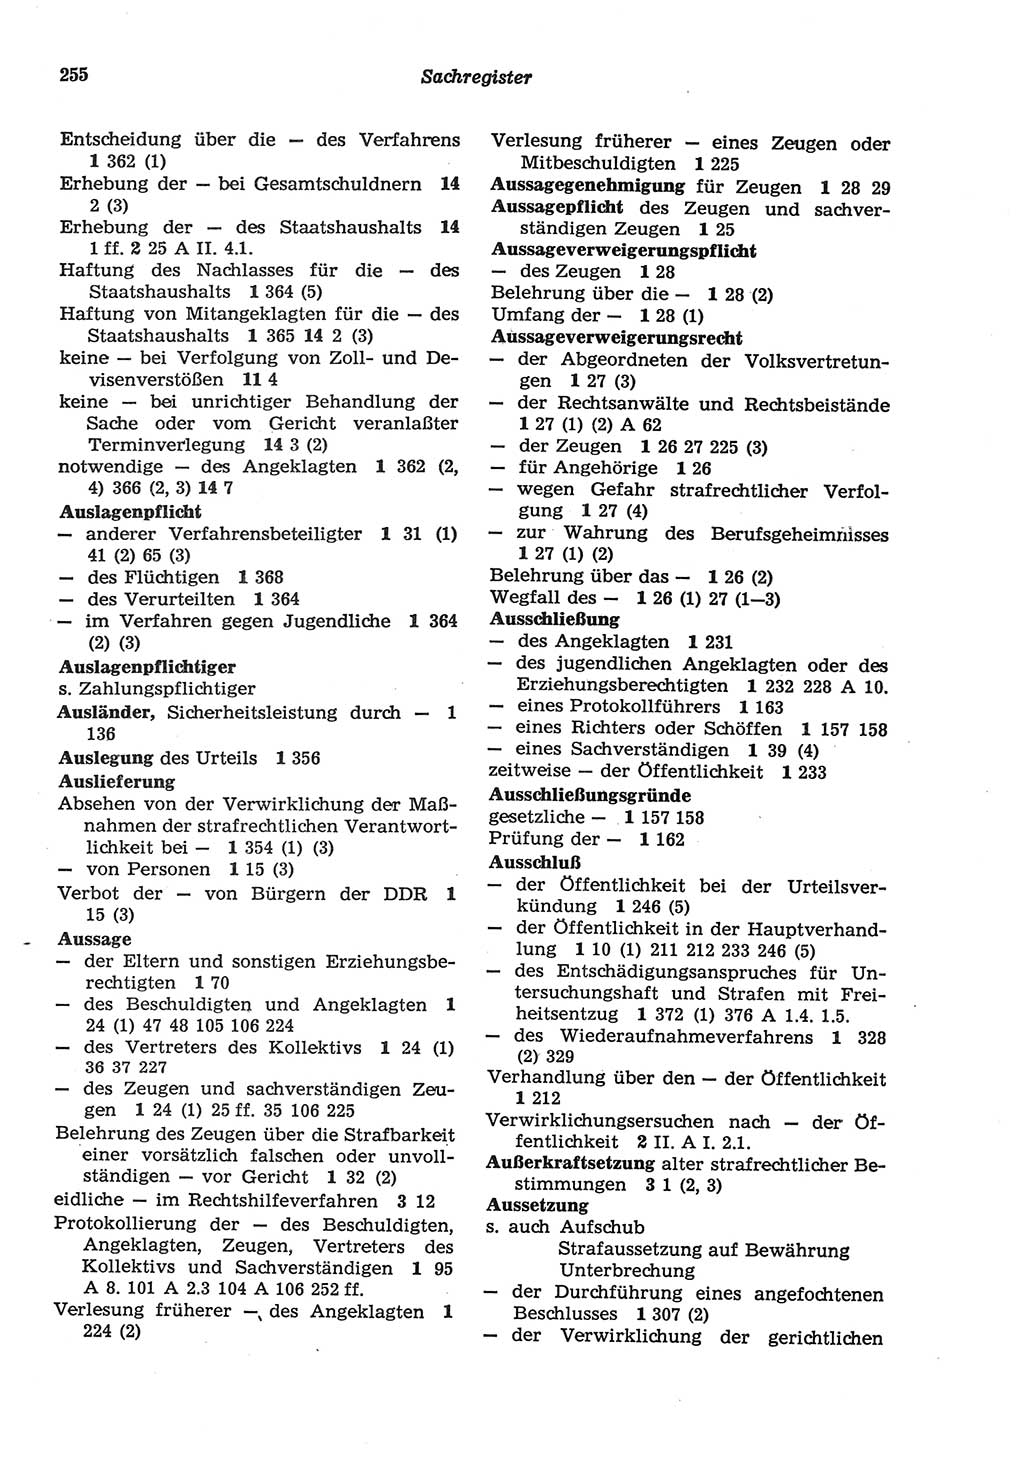 Strafprozeßordnung (StPO) der Deutschen Demokratischen Republik (DDR) sowie angrenzende Gesetze und Bestimmungen 1977, Seite 255 (StPO DDR Ges. Best. 1977, S. 255)